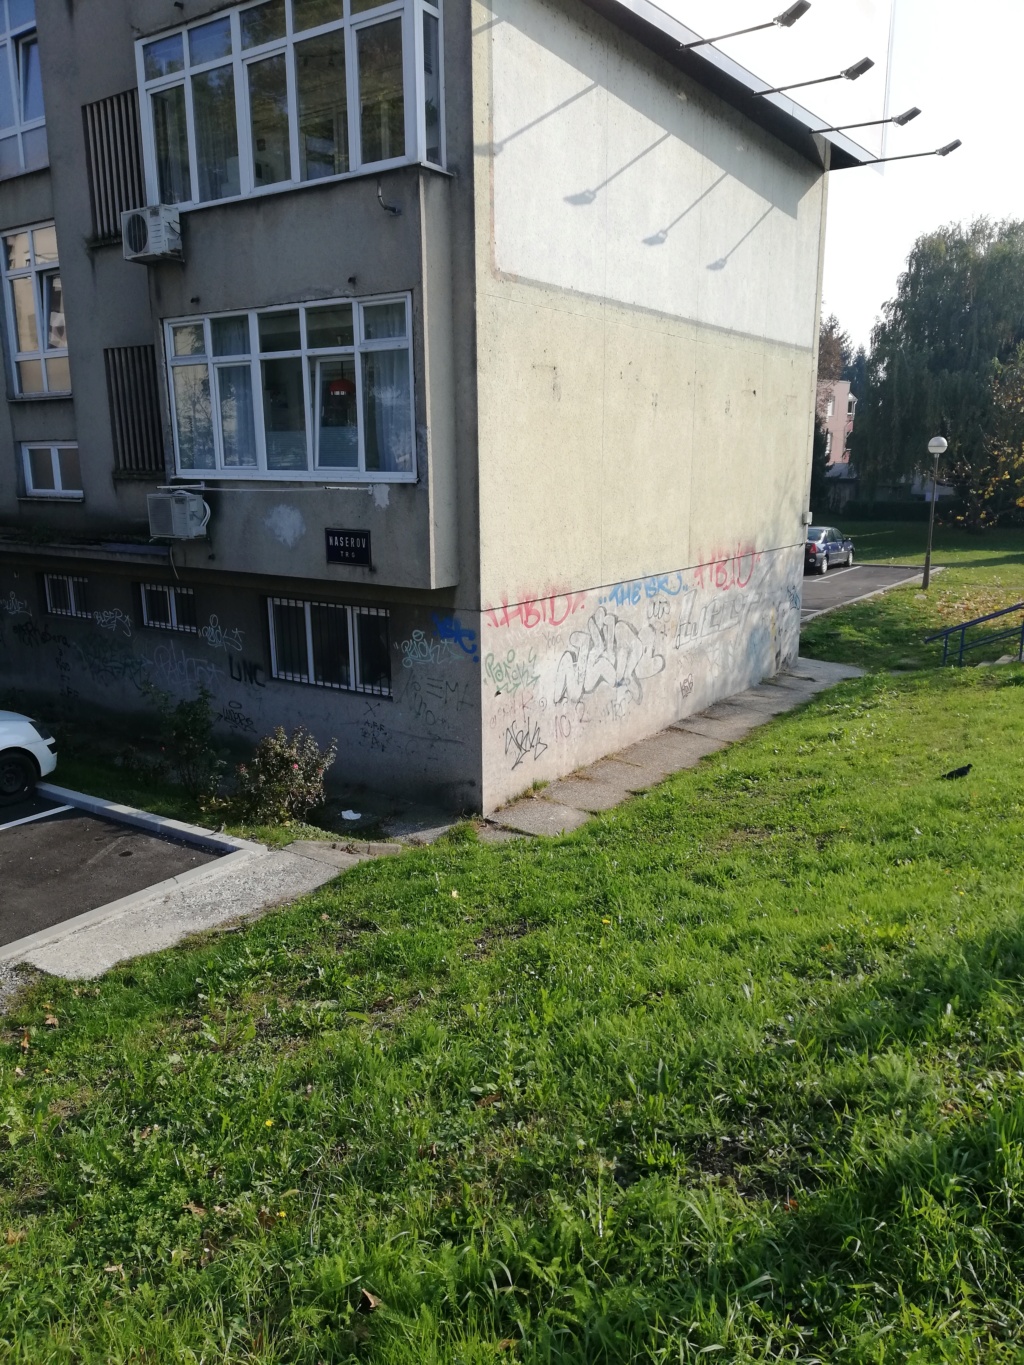 Senfov stranacki kolega naredio da se ukloni mural posvecen braniteljima i Vukovaru.Prosvjednici se okupljaju.Cekaju HEP-ovu dozvolu. Img_910